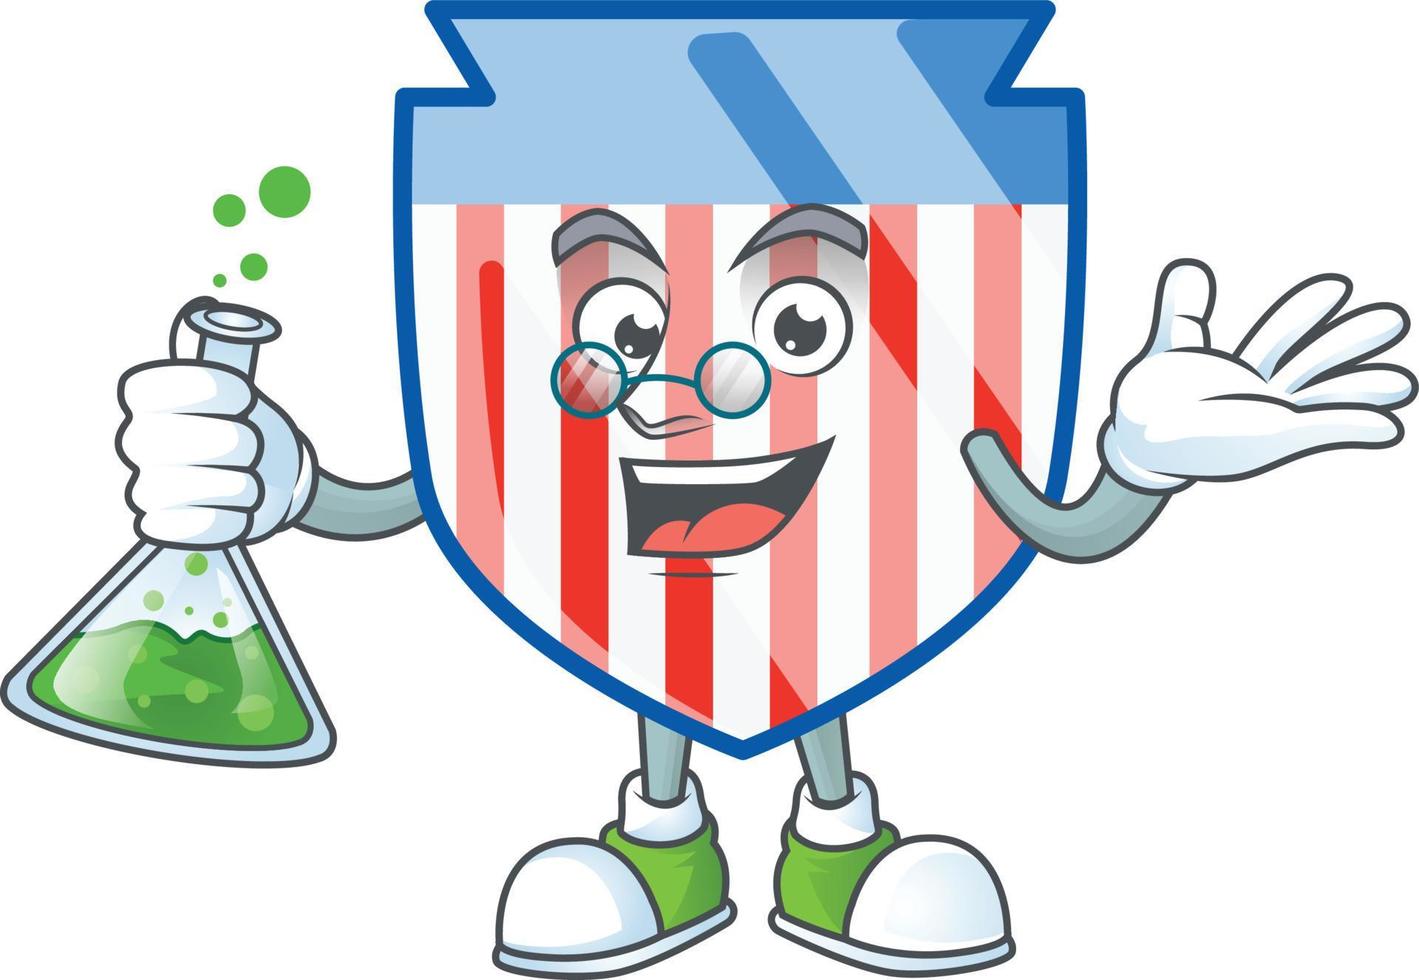 USA stripes shield icon design vector